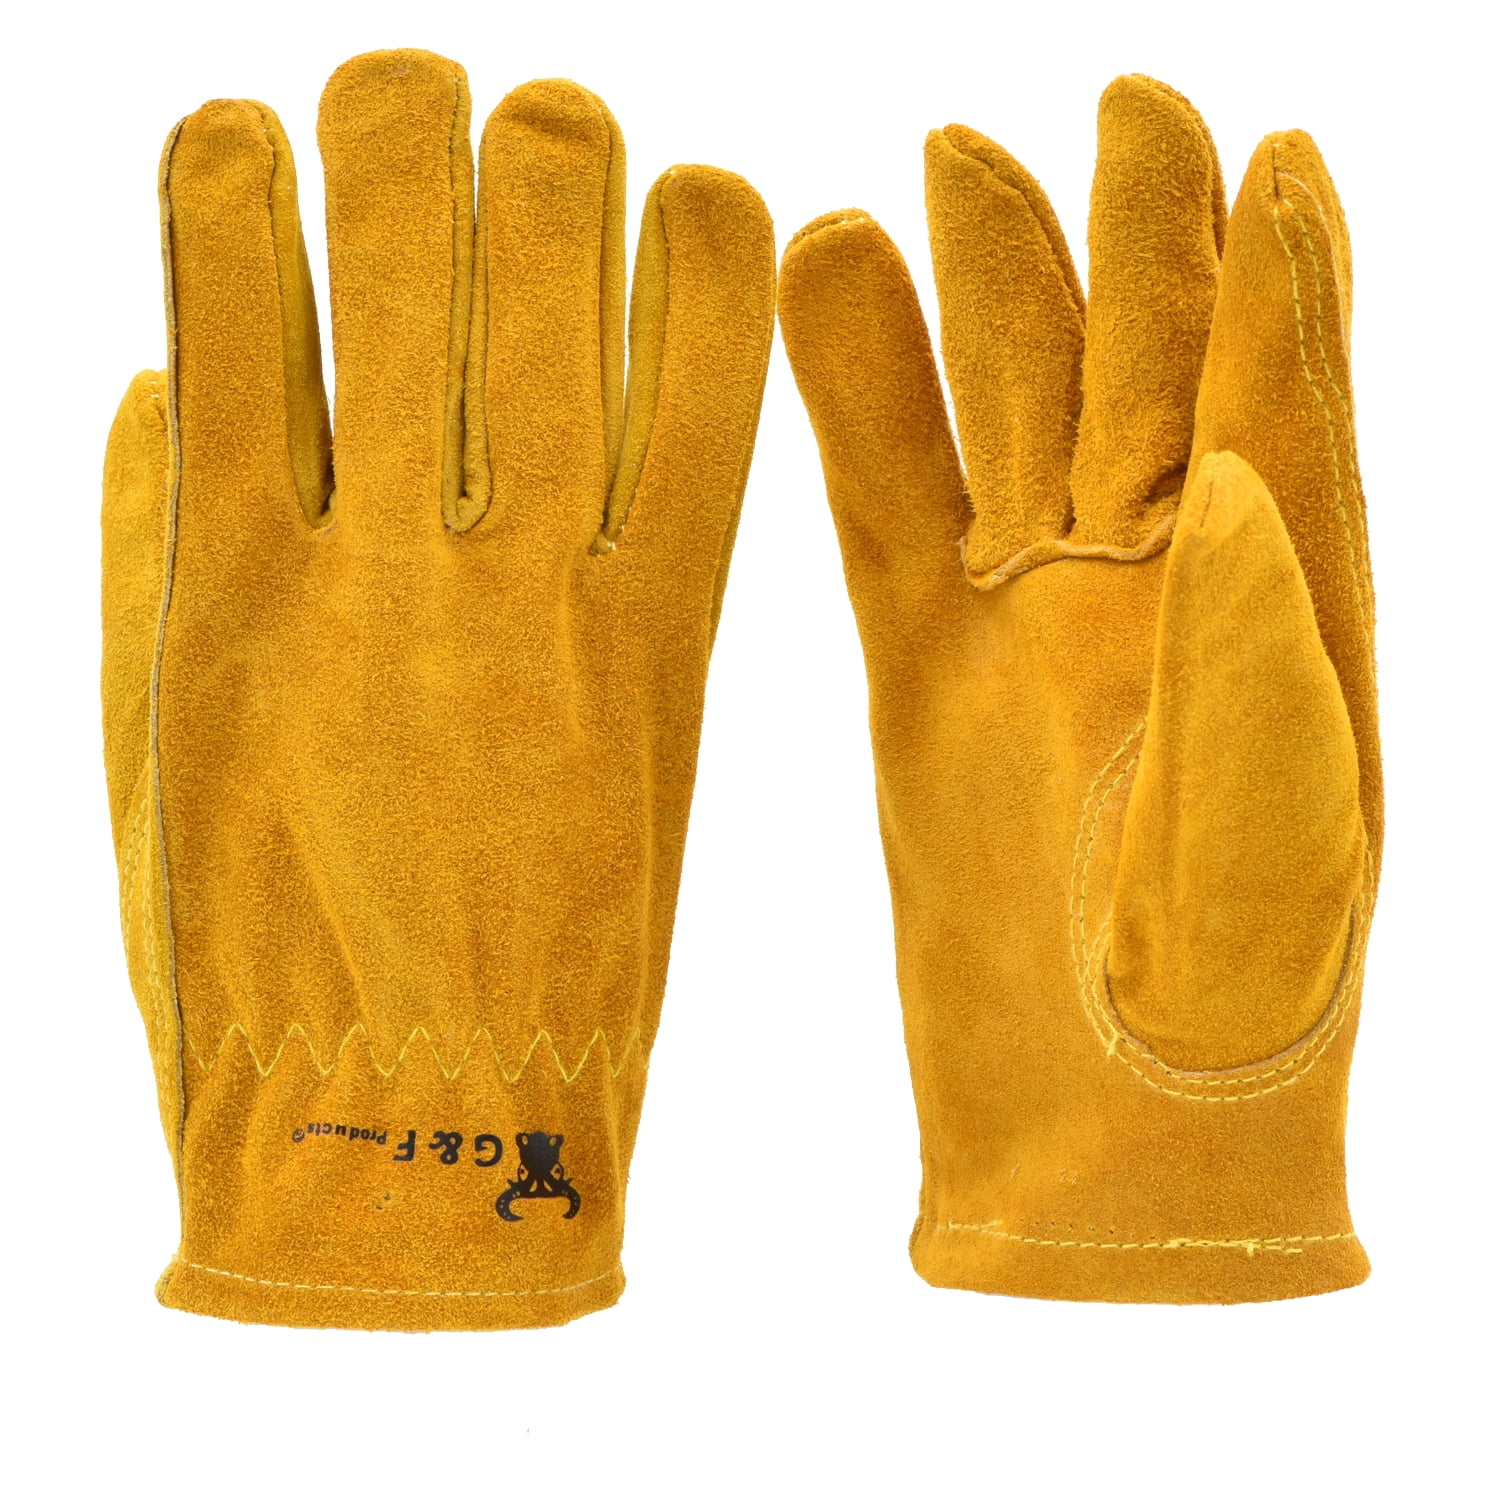 Vintage Leather Gloves Welding gloves Accessories Gloves & Mittens Gardening & Work Gloves Suede Garden Gloves Industrial gloves Man Suede Protection Gloves Metalwork 